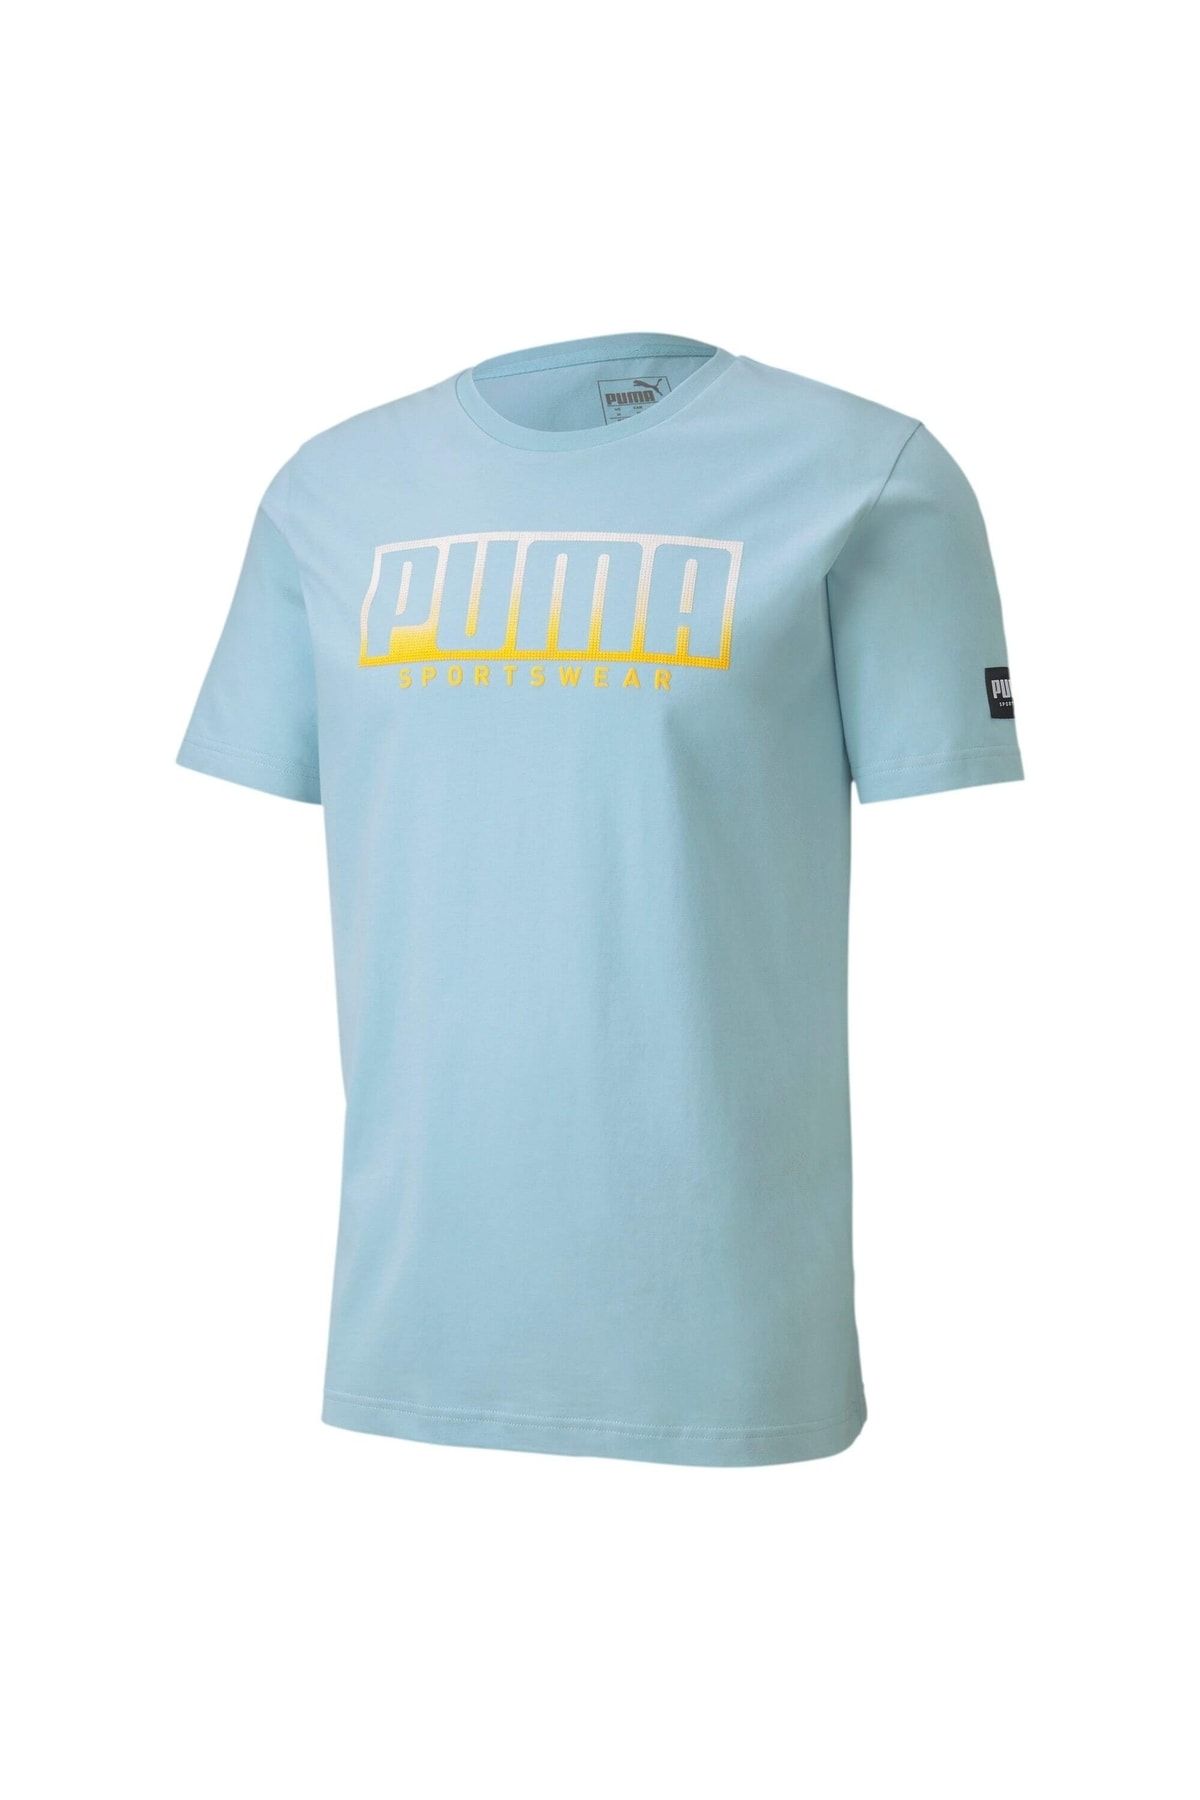 Puma Erkek Athletıcs Bıg Logo T-shirt